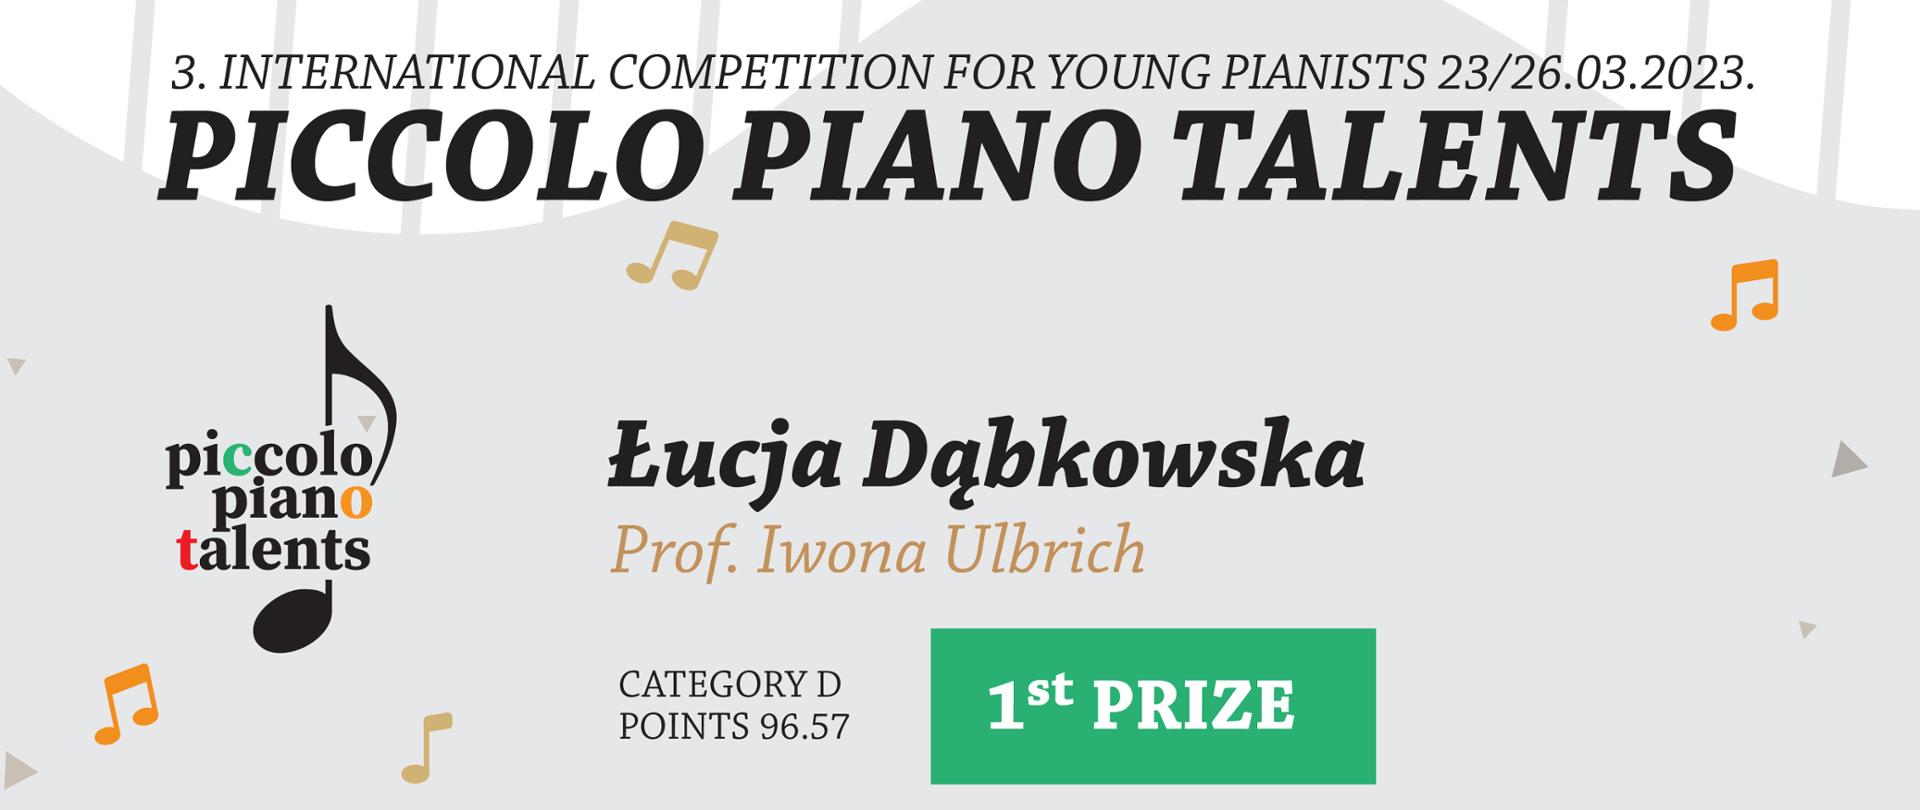 3 International Competition for Toung Pianists 23/26. 03.2023, nauczyciel prof. Iwona Ulbrich. Po lewej stronie logo "Piccolo Piano Talenst", na dole podpisy jury.